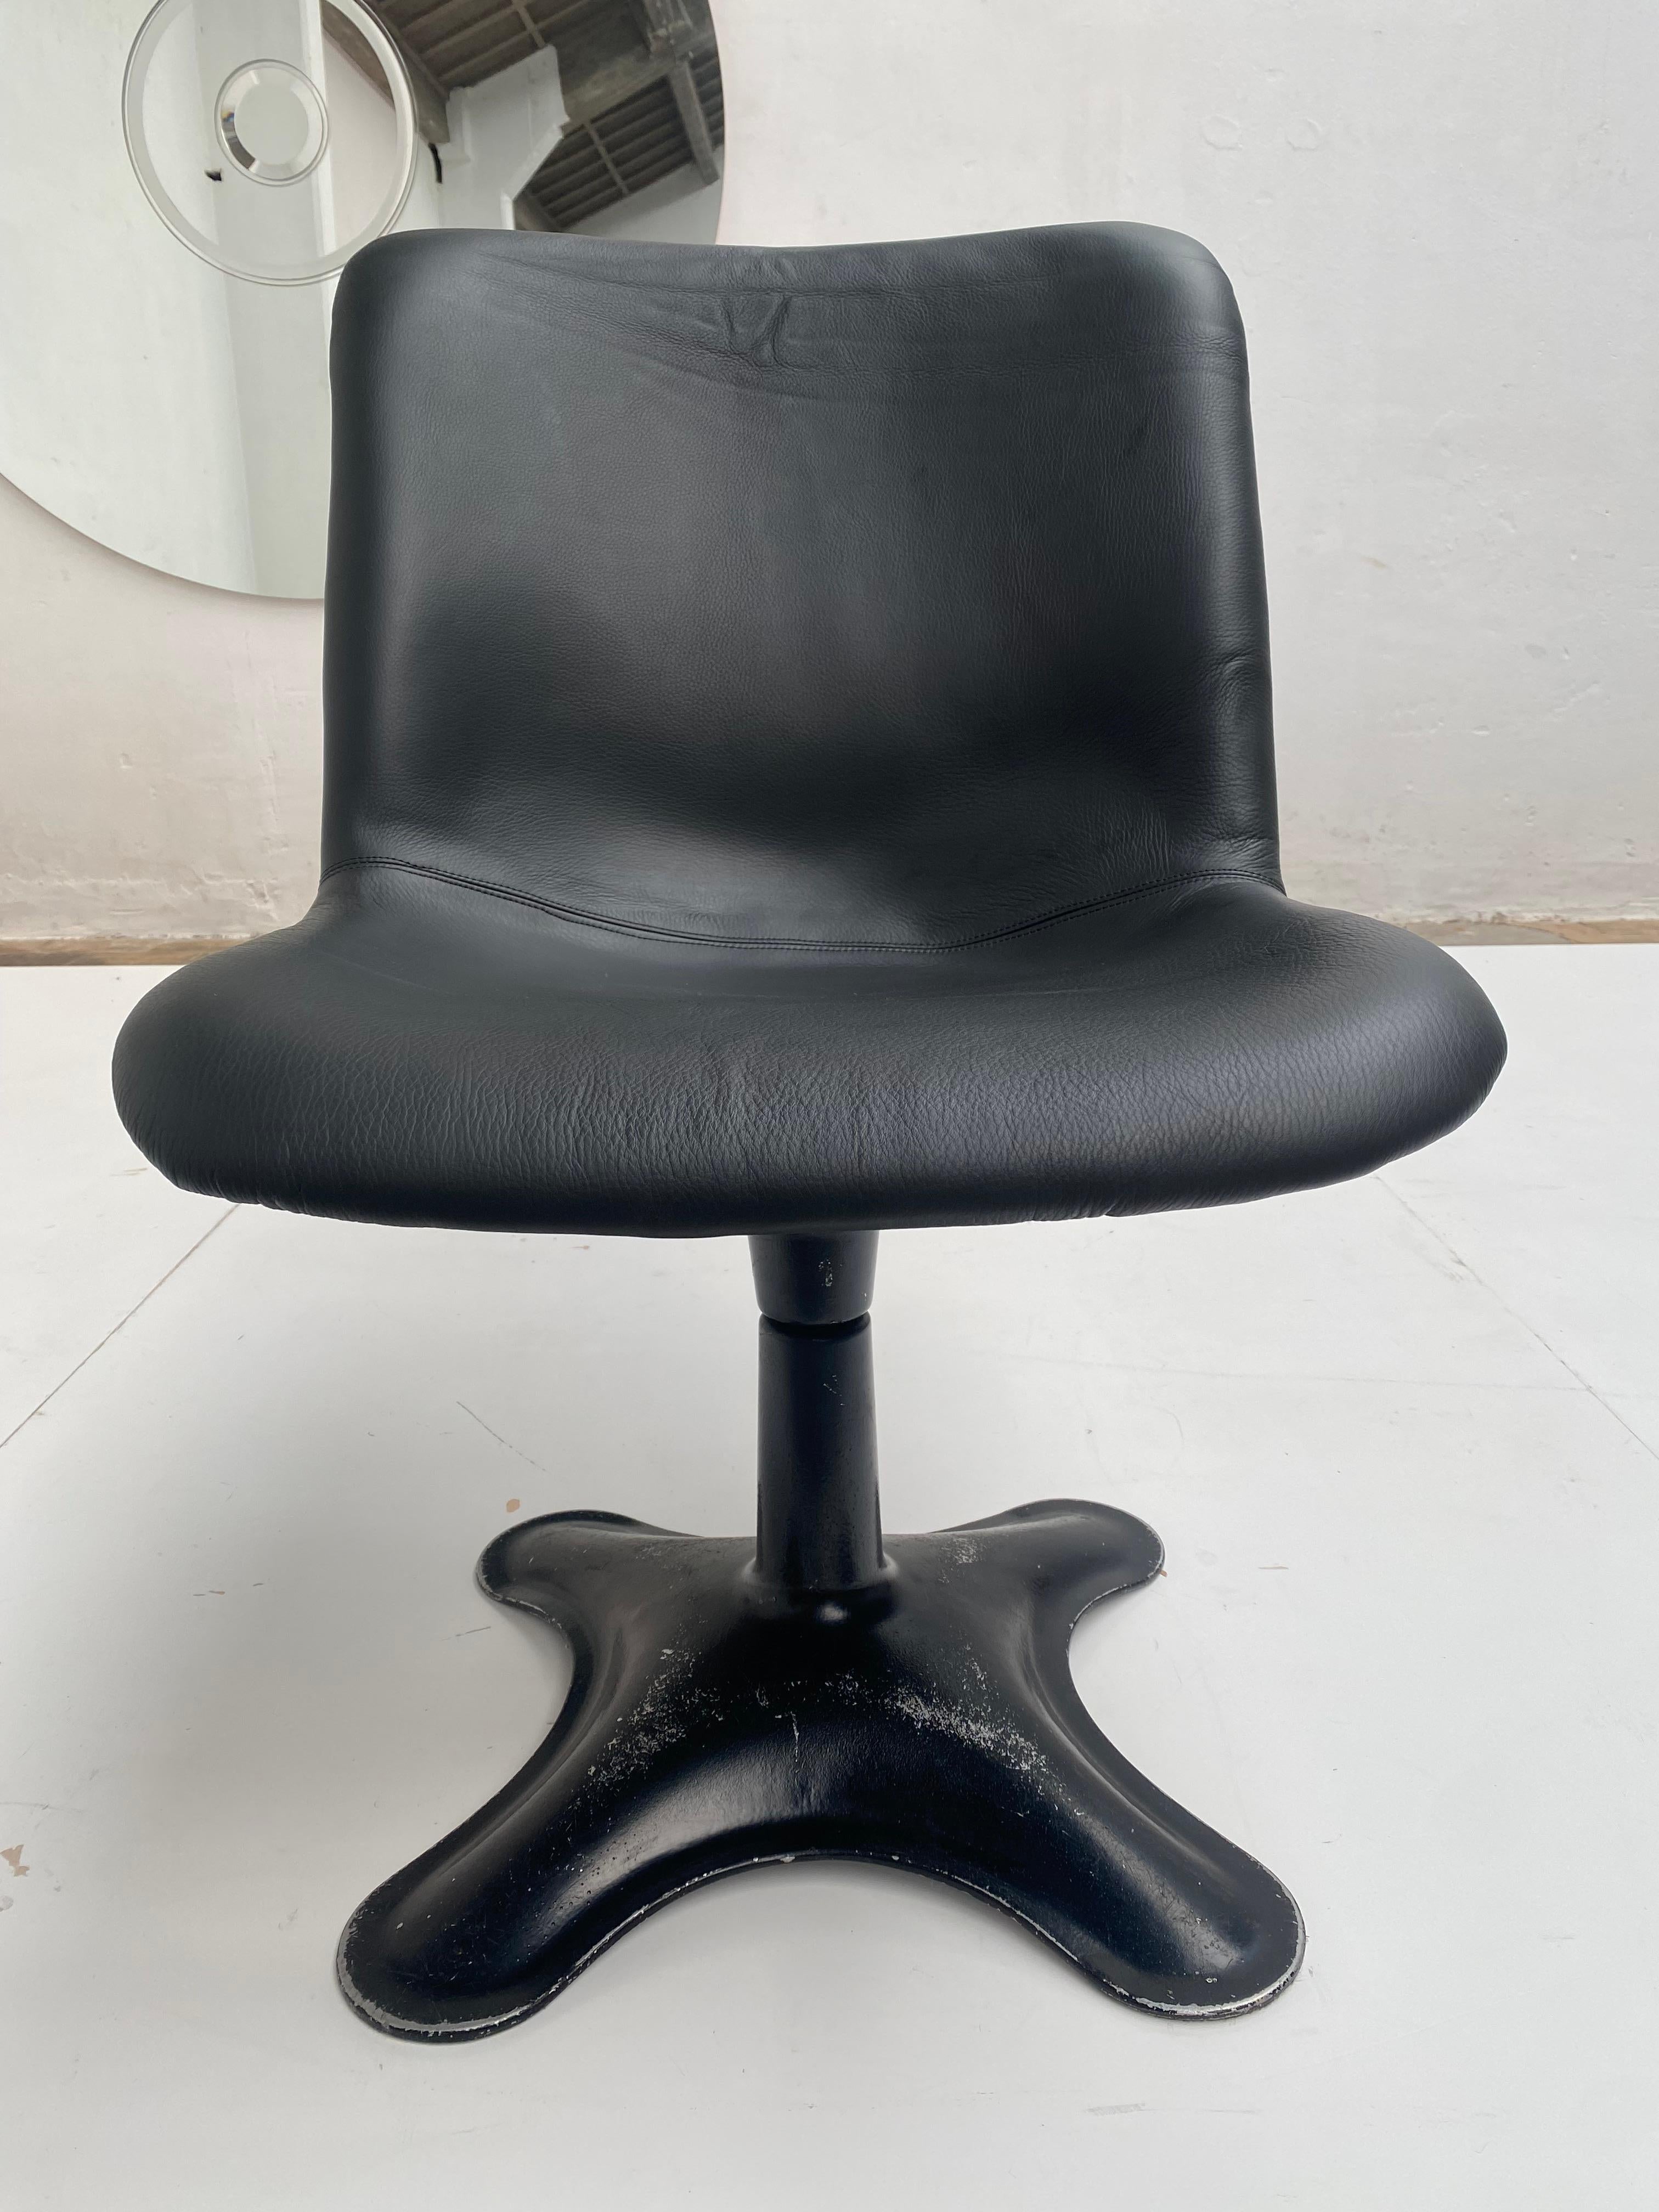 Paire de chaises pivotantes modèle '415A' Finlande 1960s   

Ces chaises de salle à manger de forme organique ont été conçues par l'artiste finlandais Yrjö Kukkapuro.

Base pivotante en fibre de verre moulée et aluminium moulé, avec revêtement en